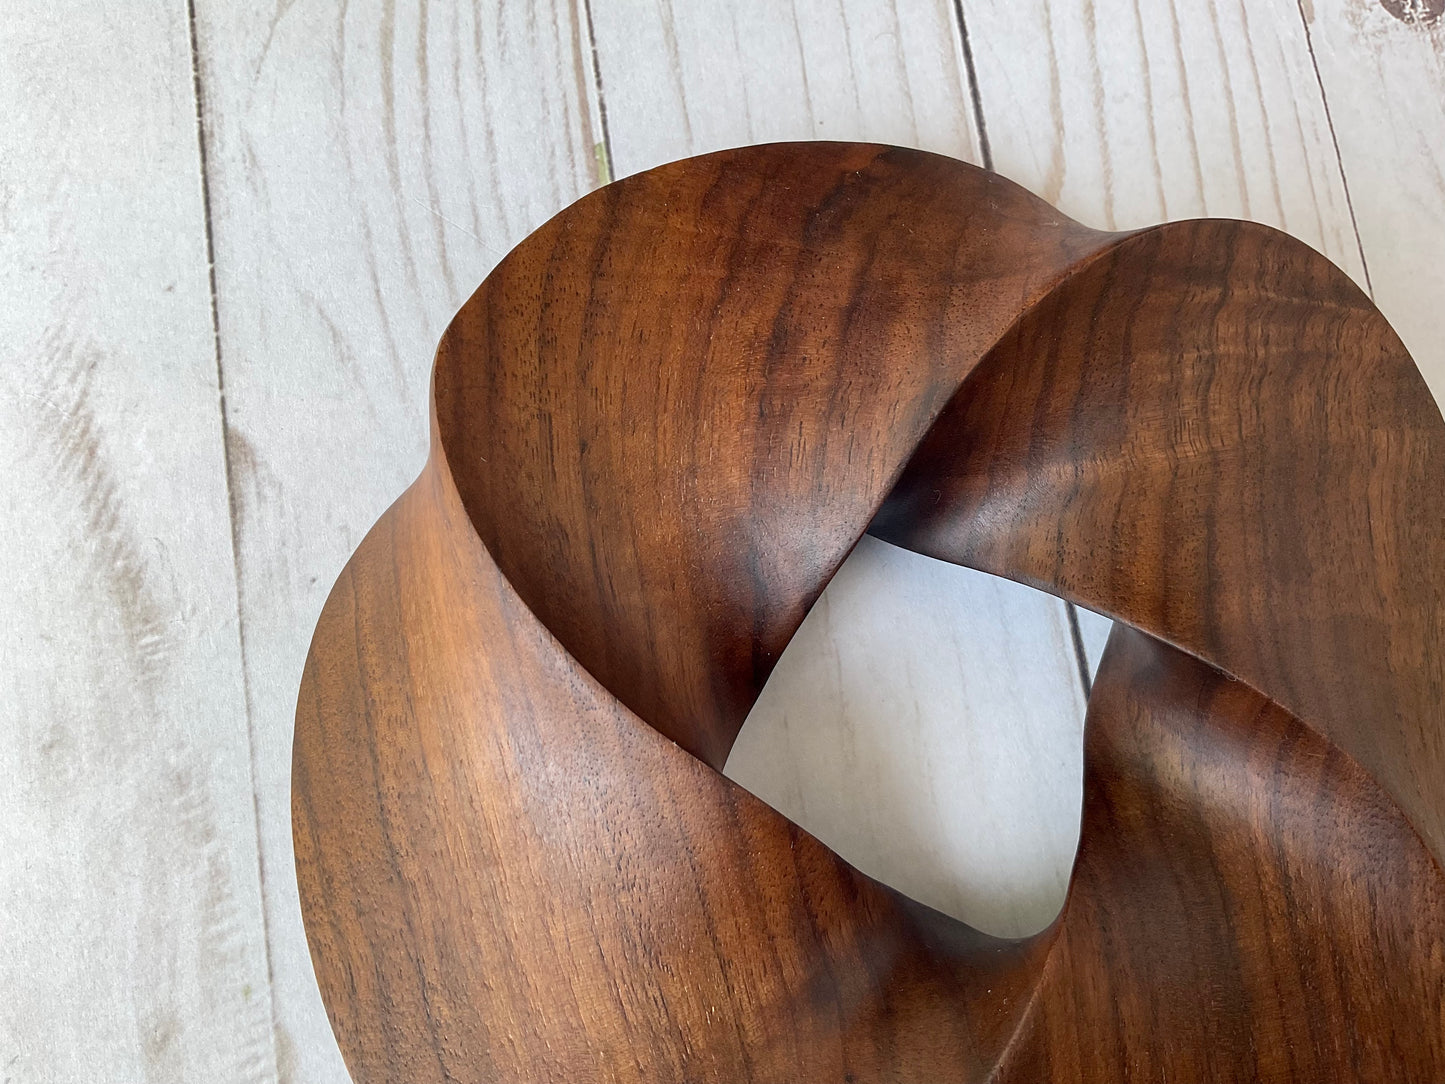 Quadruple-folded Möbius Strip-like Walnut Wood Carving, 7" diameter